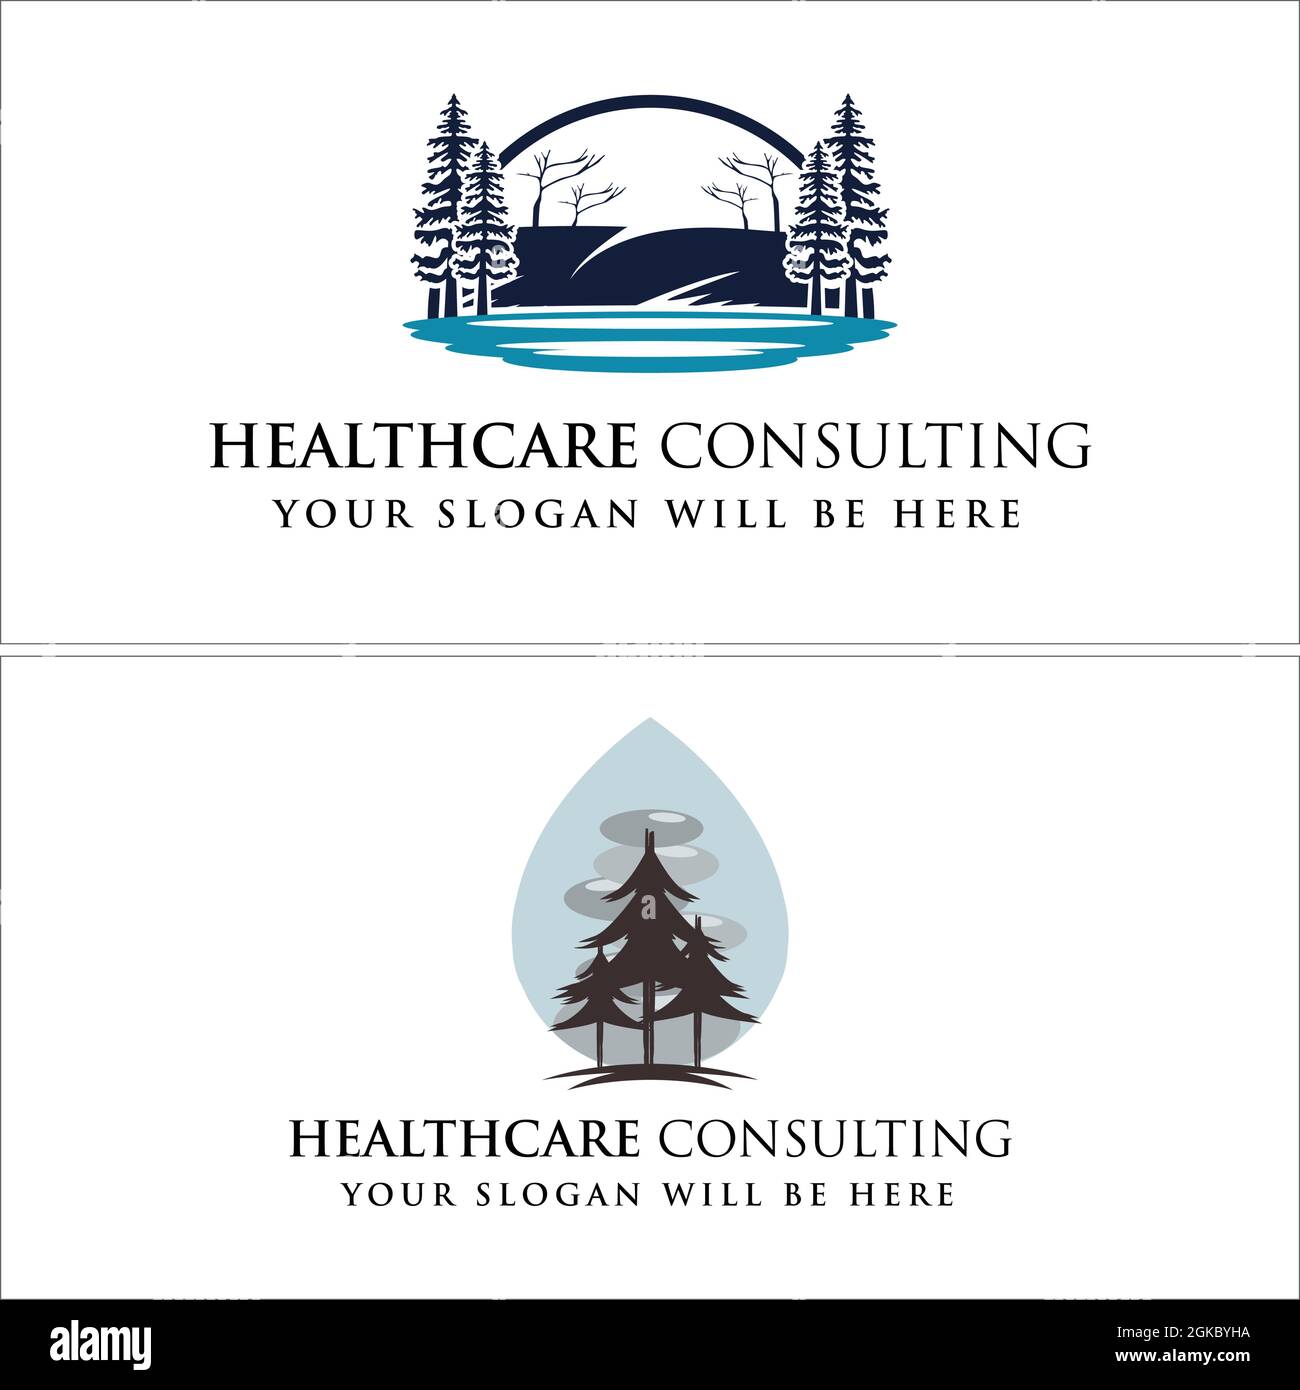 Healthcare consulting environment river logo design Stock Vector